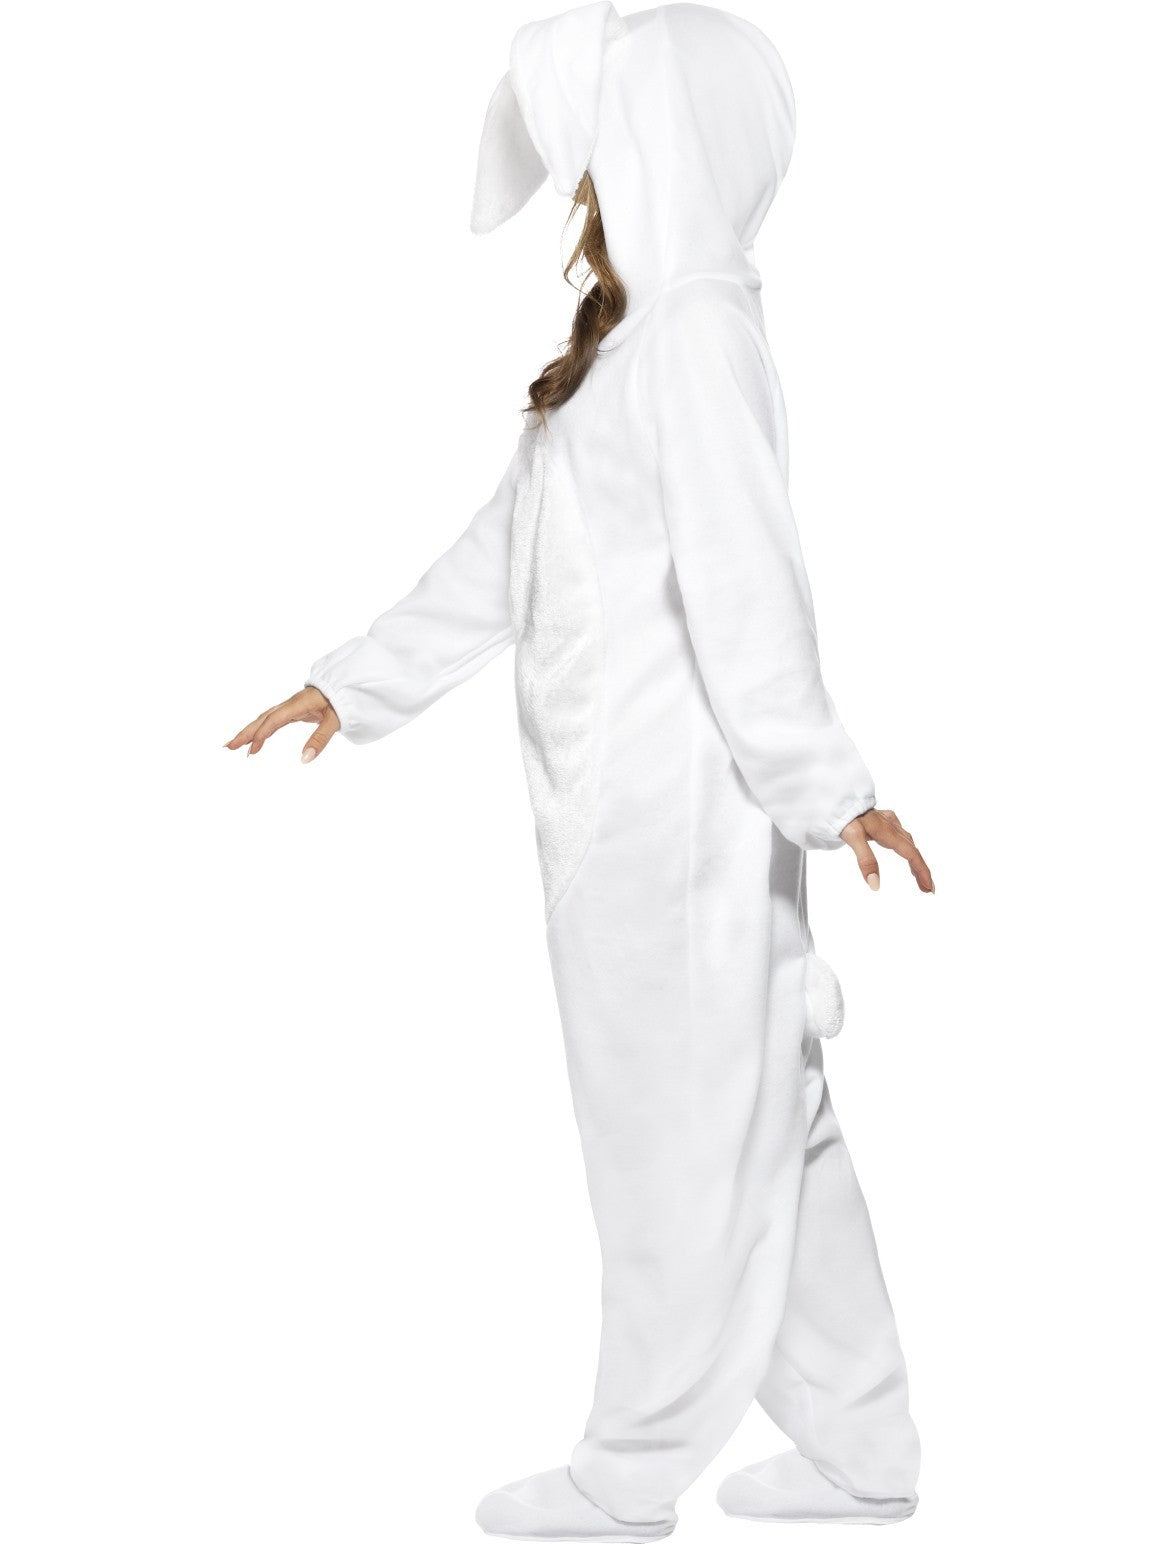 White Rabbit Jumpsuit Costume